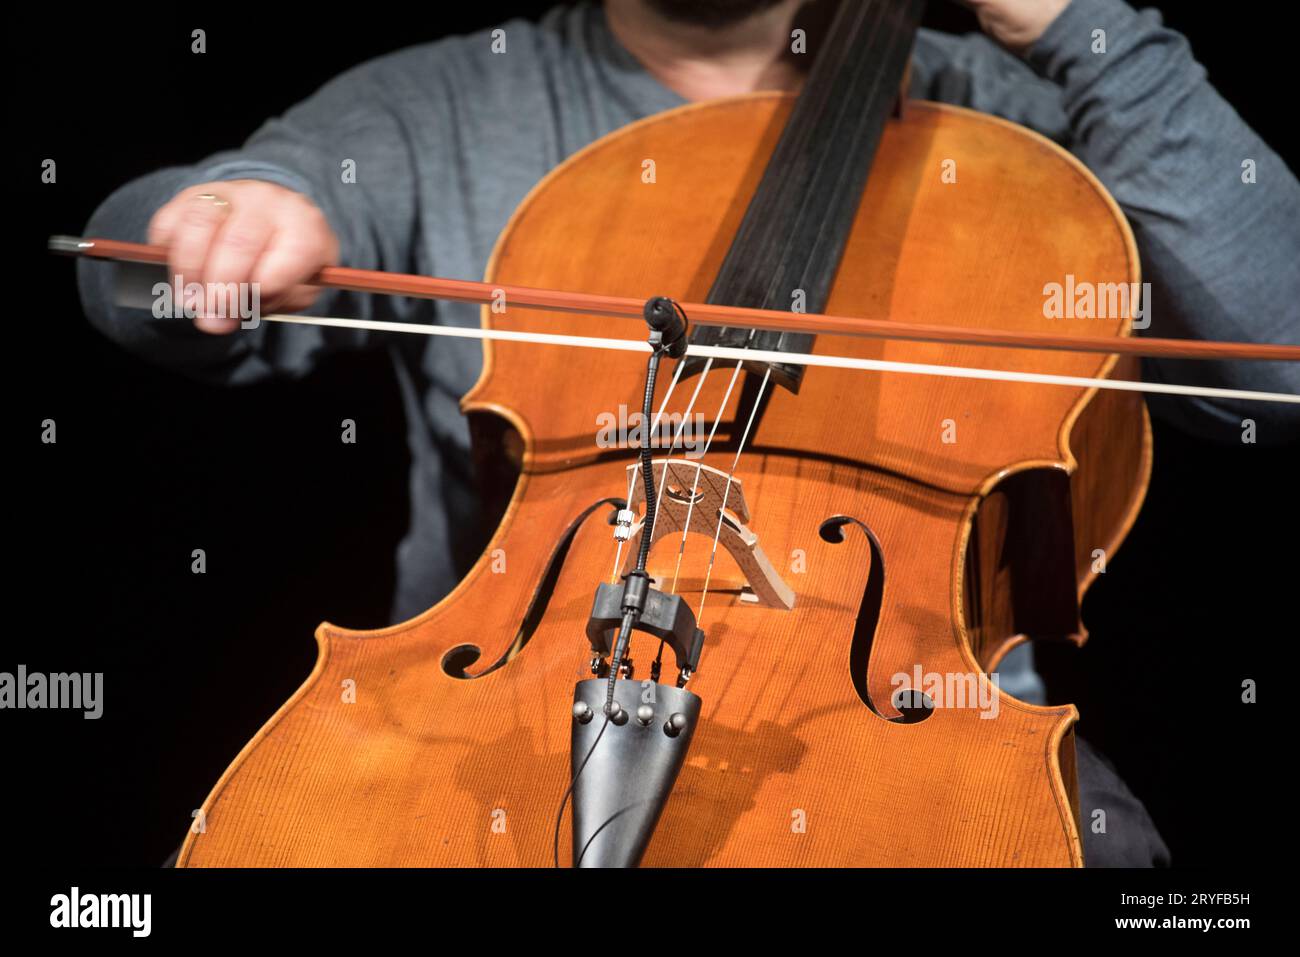 Violoncelle ou violoncelle, instrument à cordes joué avec un arc Banque D'Images